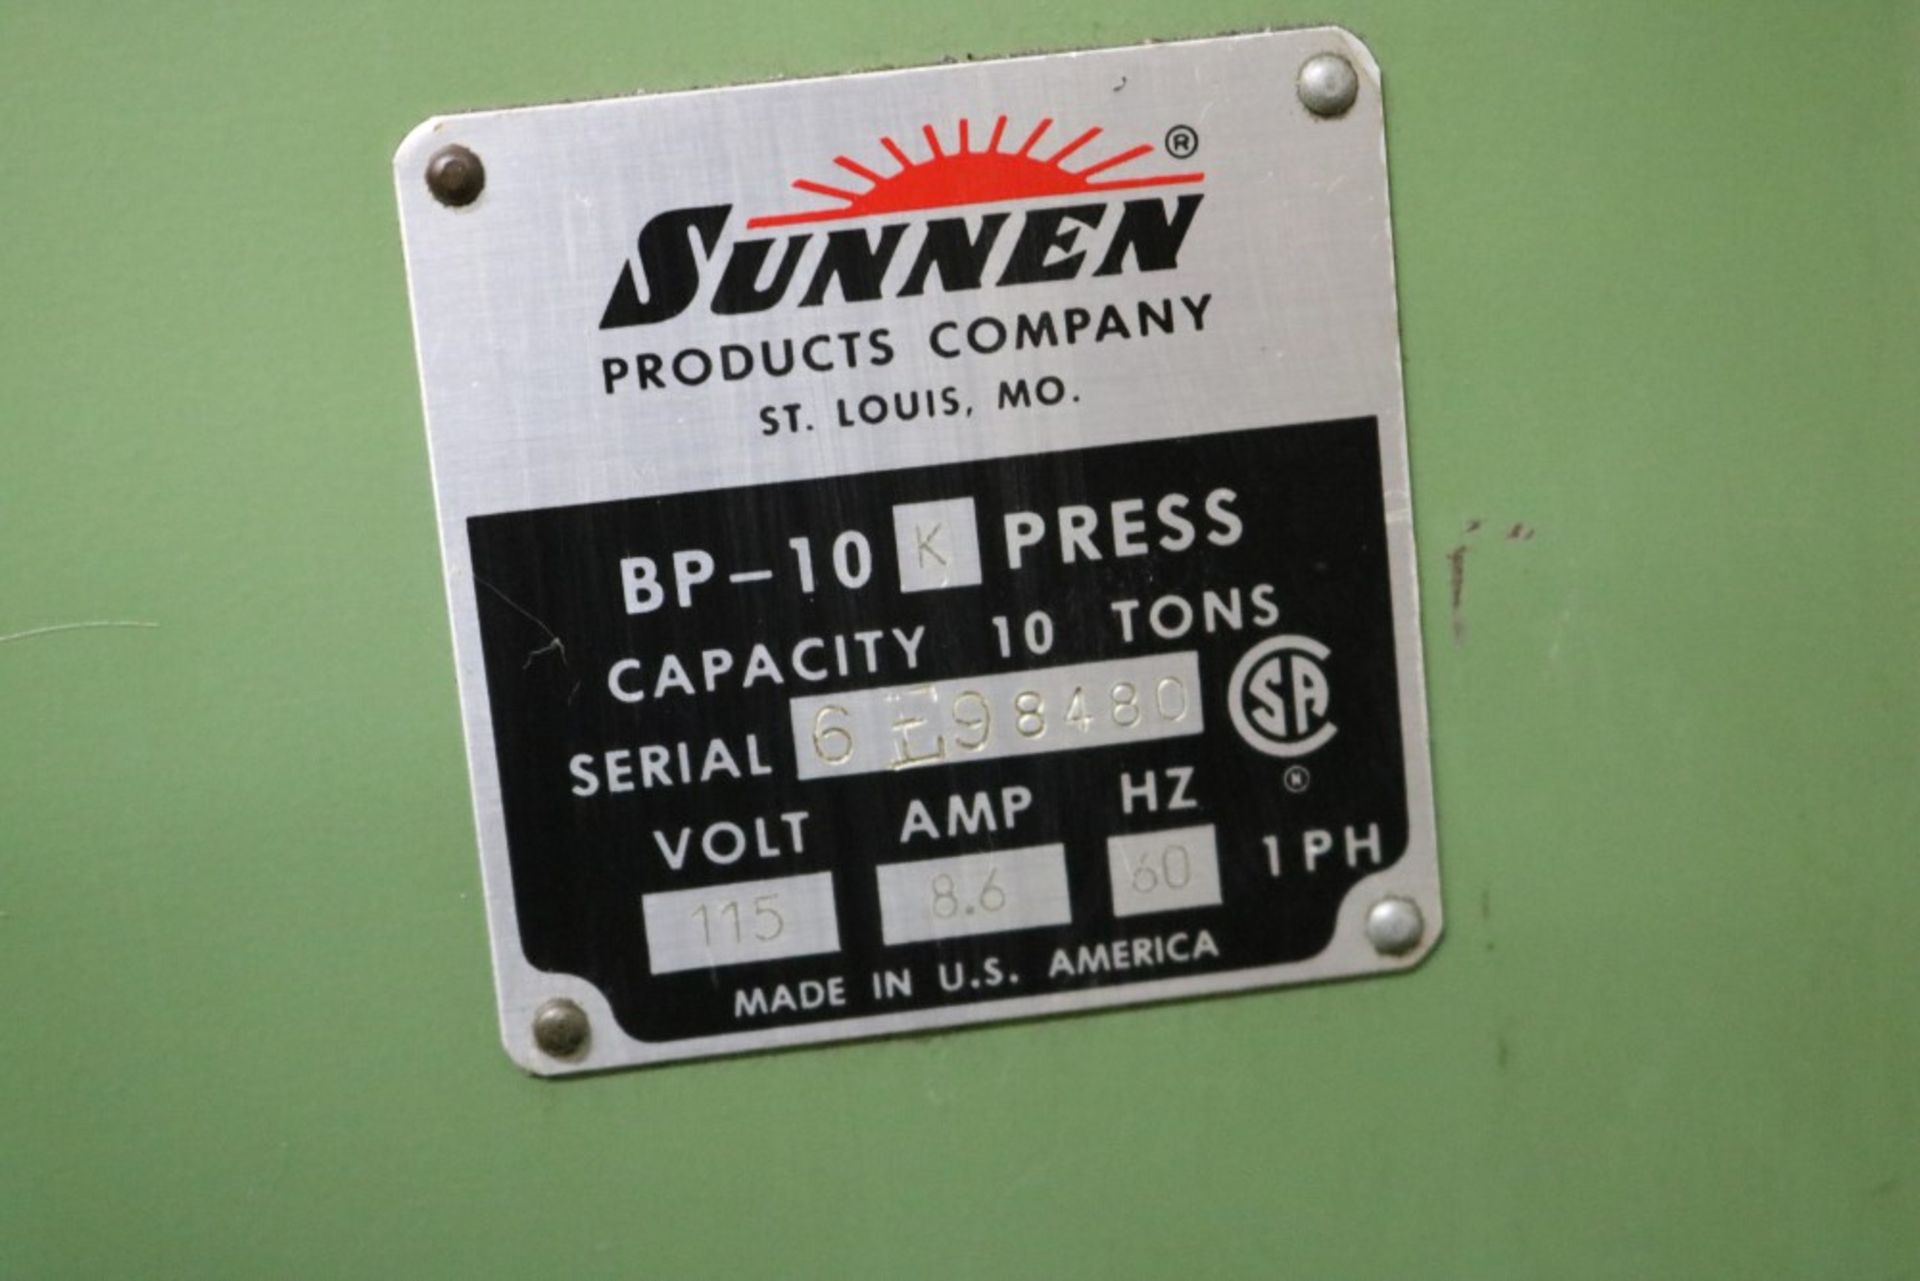 Sunnen BP-10 K Press, 10 Ton Capacity, SN 6E98480 - Image 3 of 5